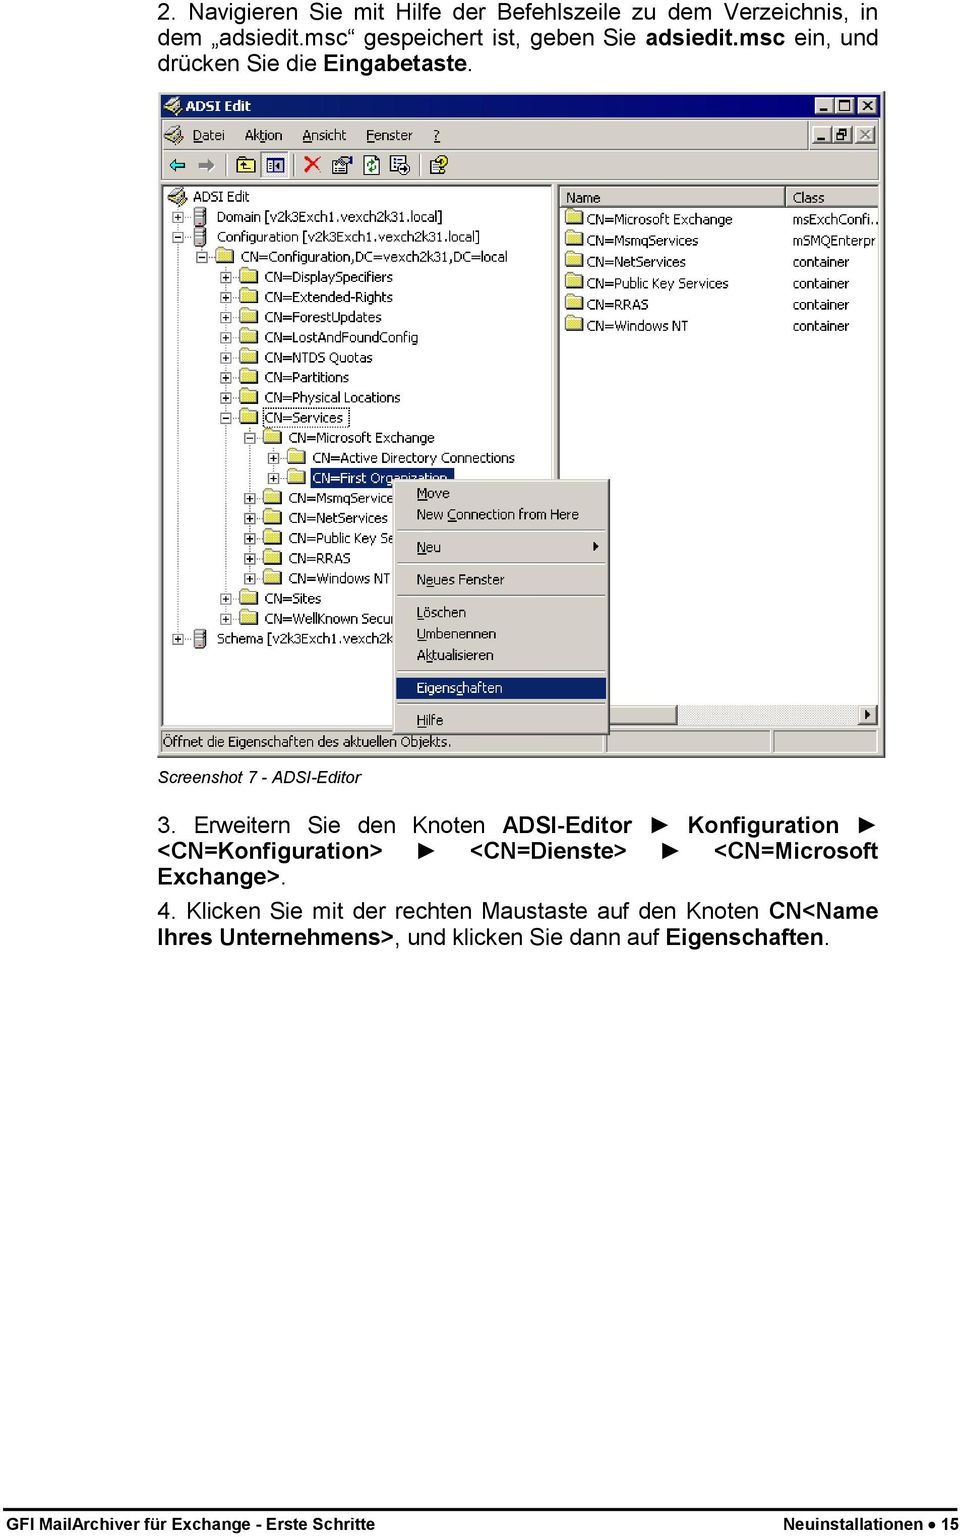 Erweitern Sie den Knoten ADSI-Editor Konfiguration <CN=Konfiguration> <CN=Dienste> <CN=Microsoft Exchange>. 4.